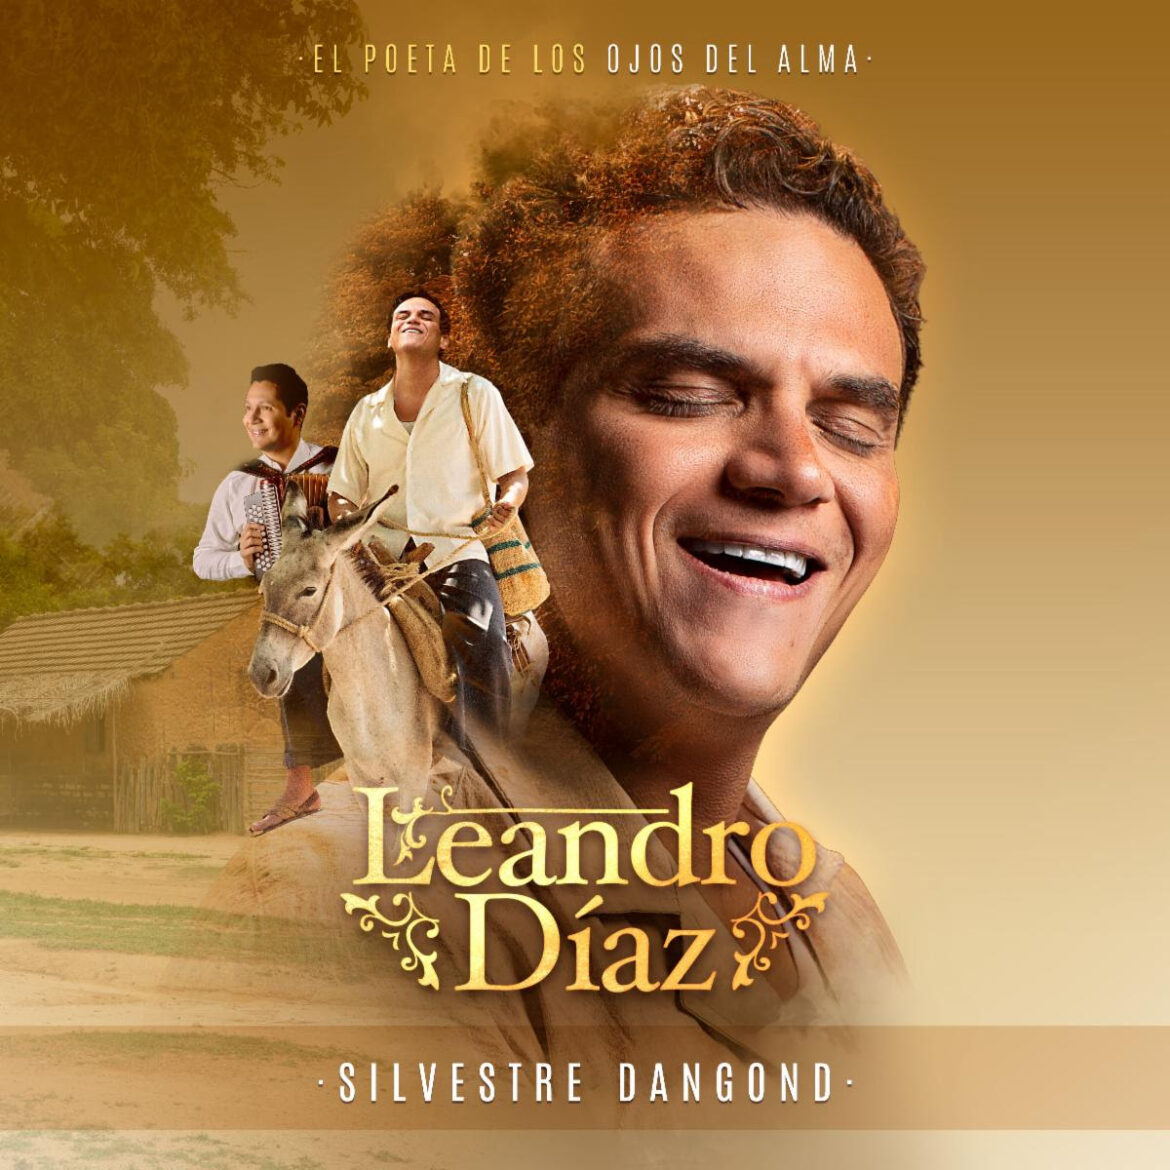 Silvestre Dangond lanza el álbum “Leandro Díaz ”en homenaje al Gran Maestro vallenato